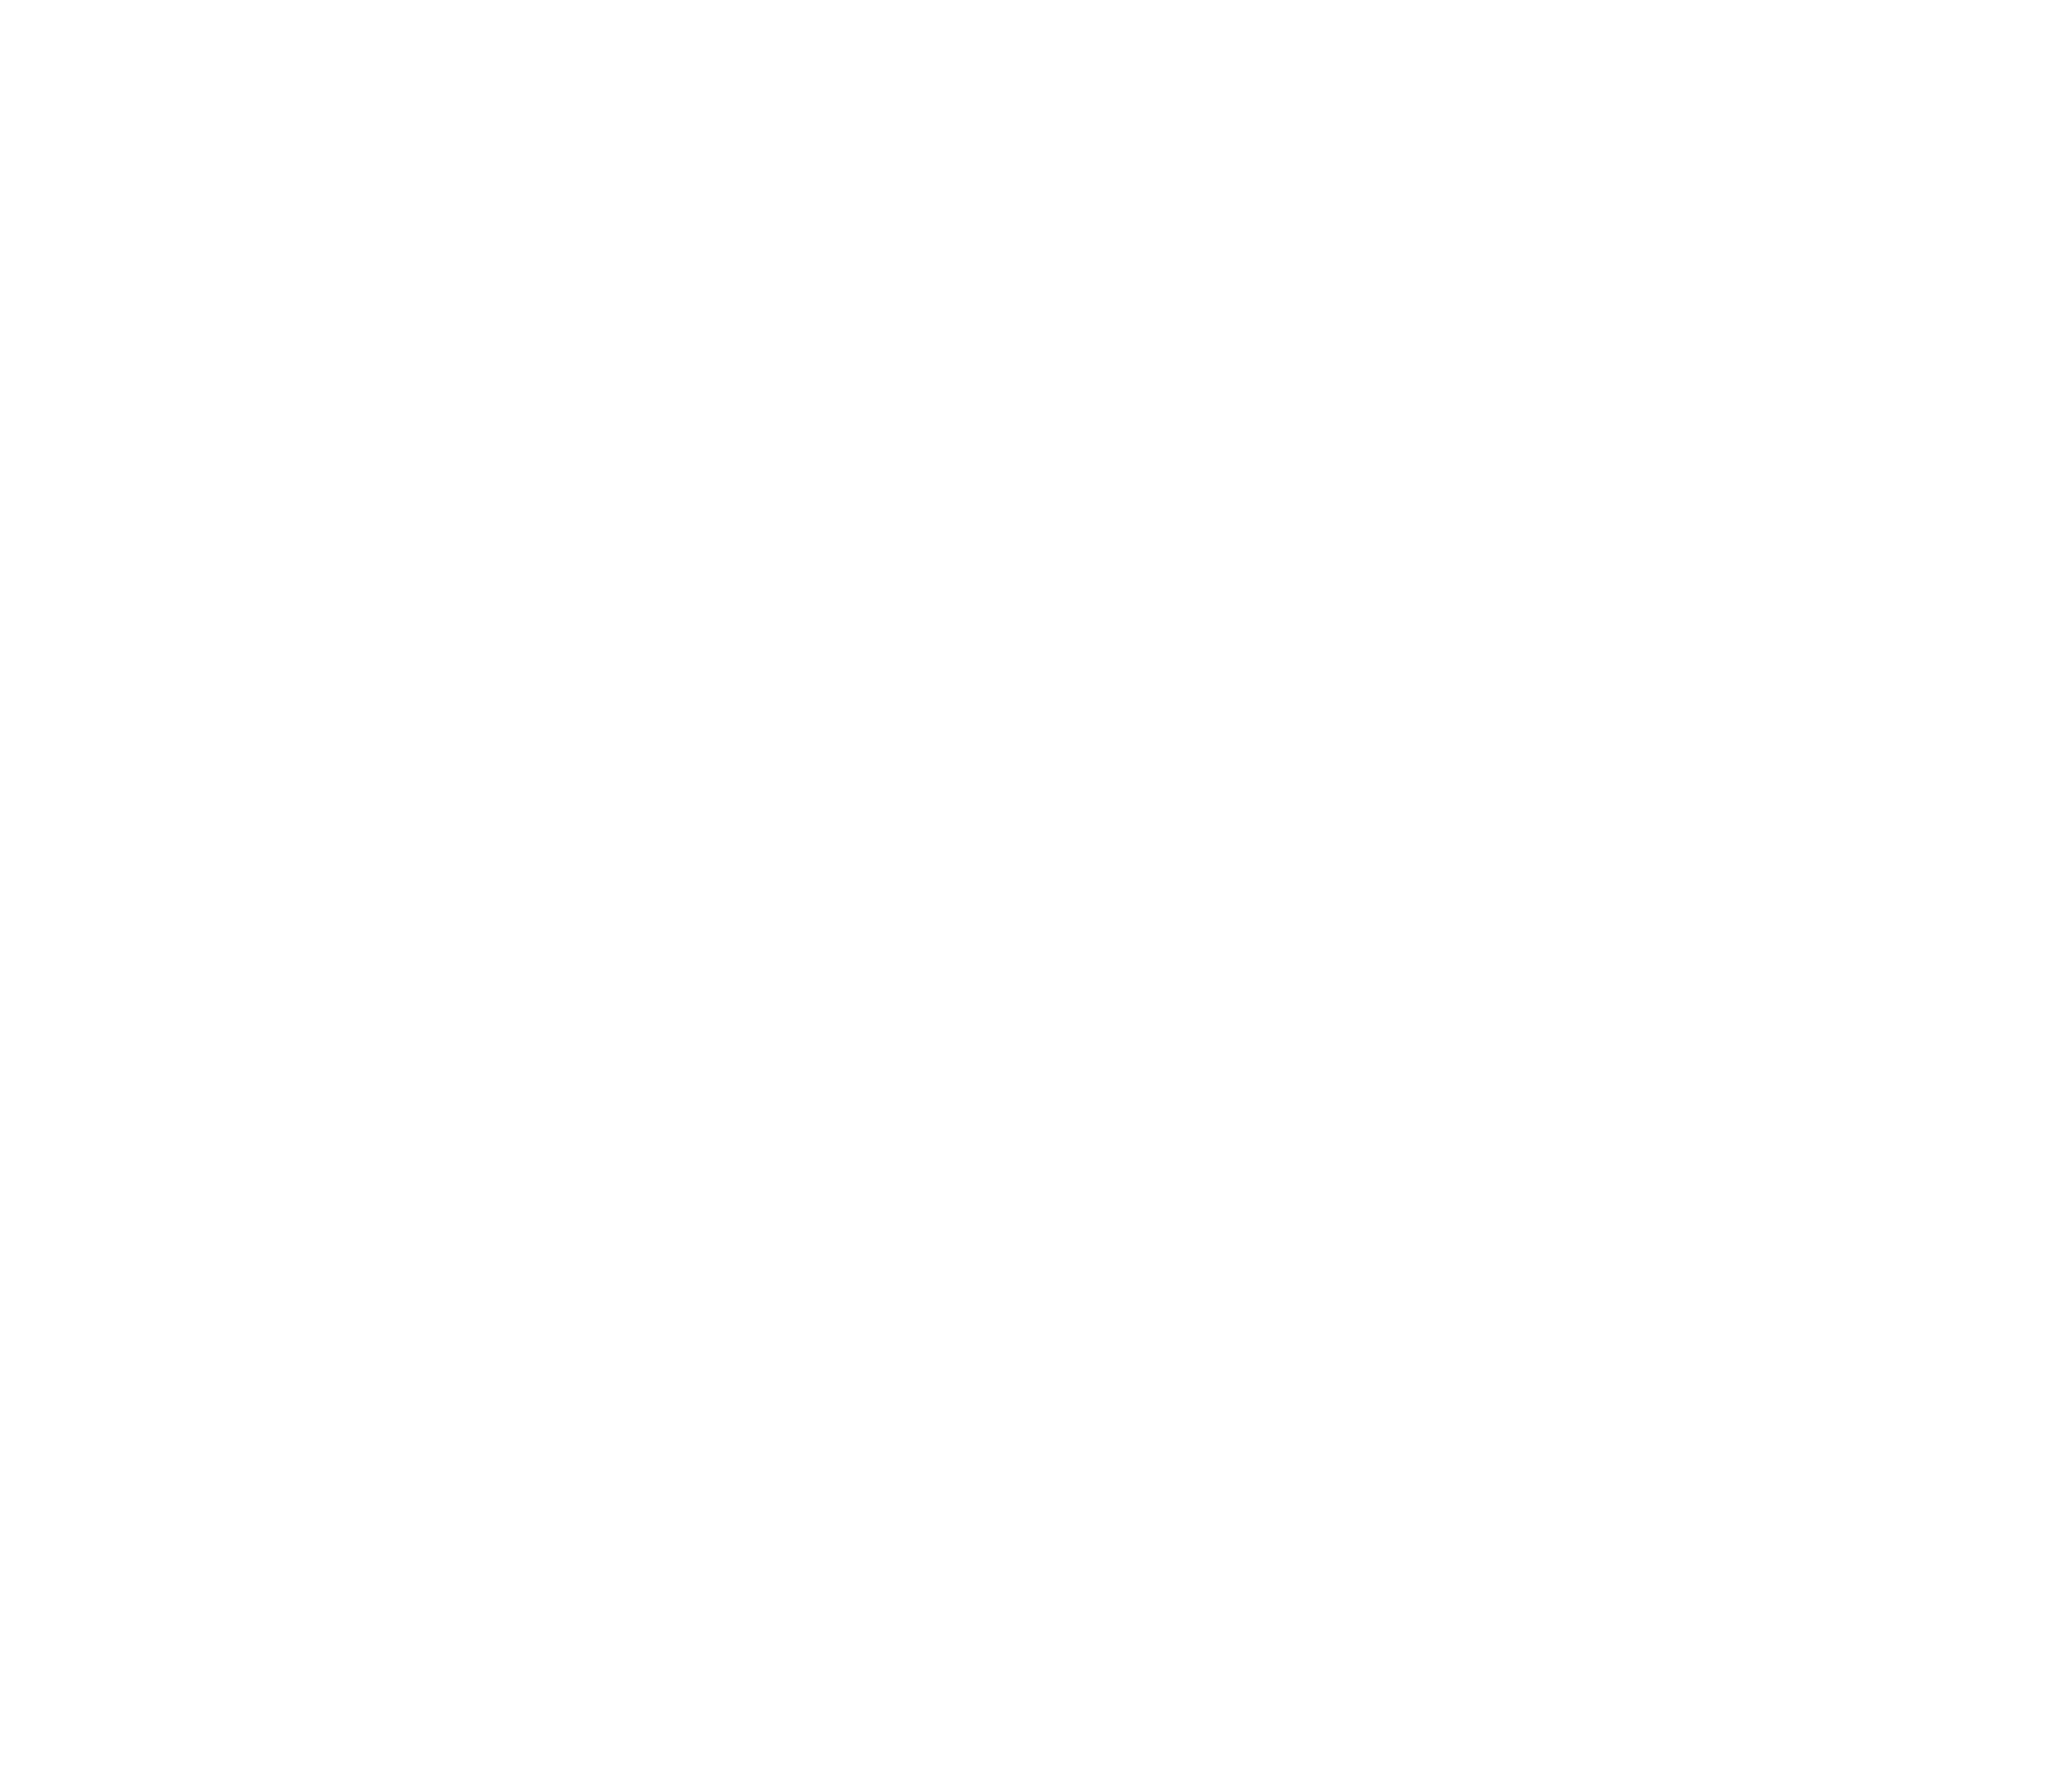 Jorge Charrua